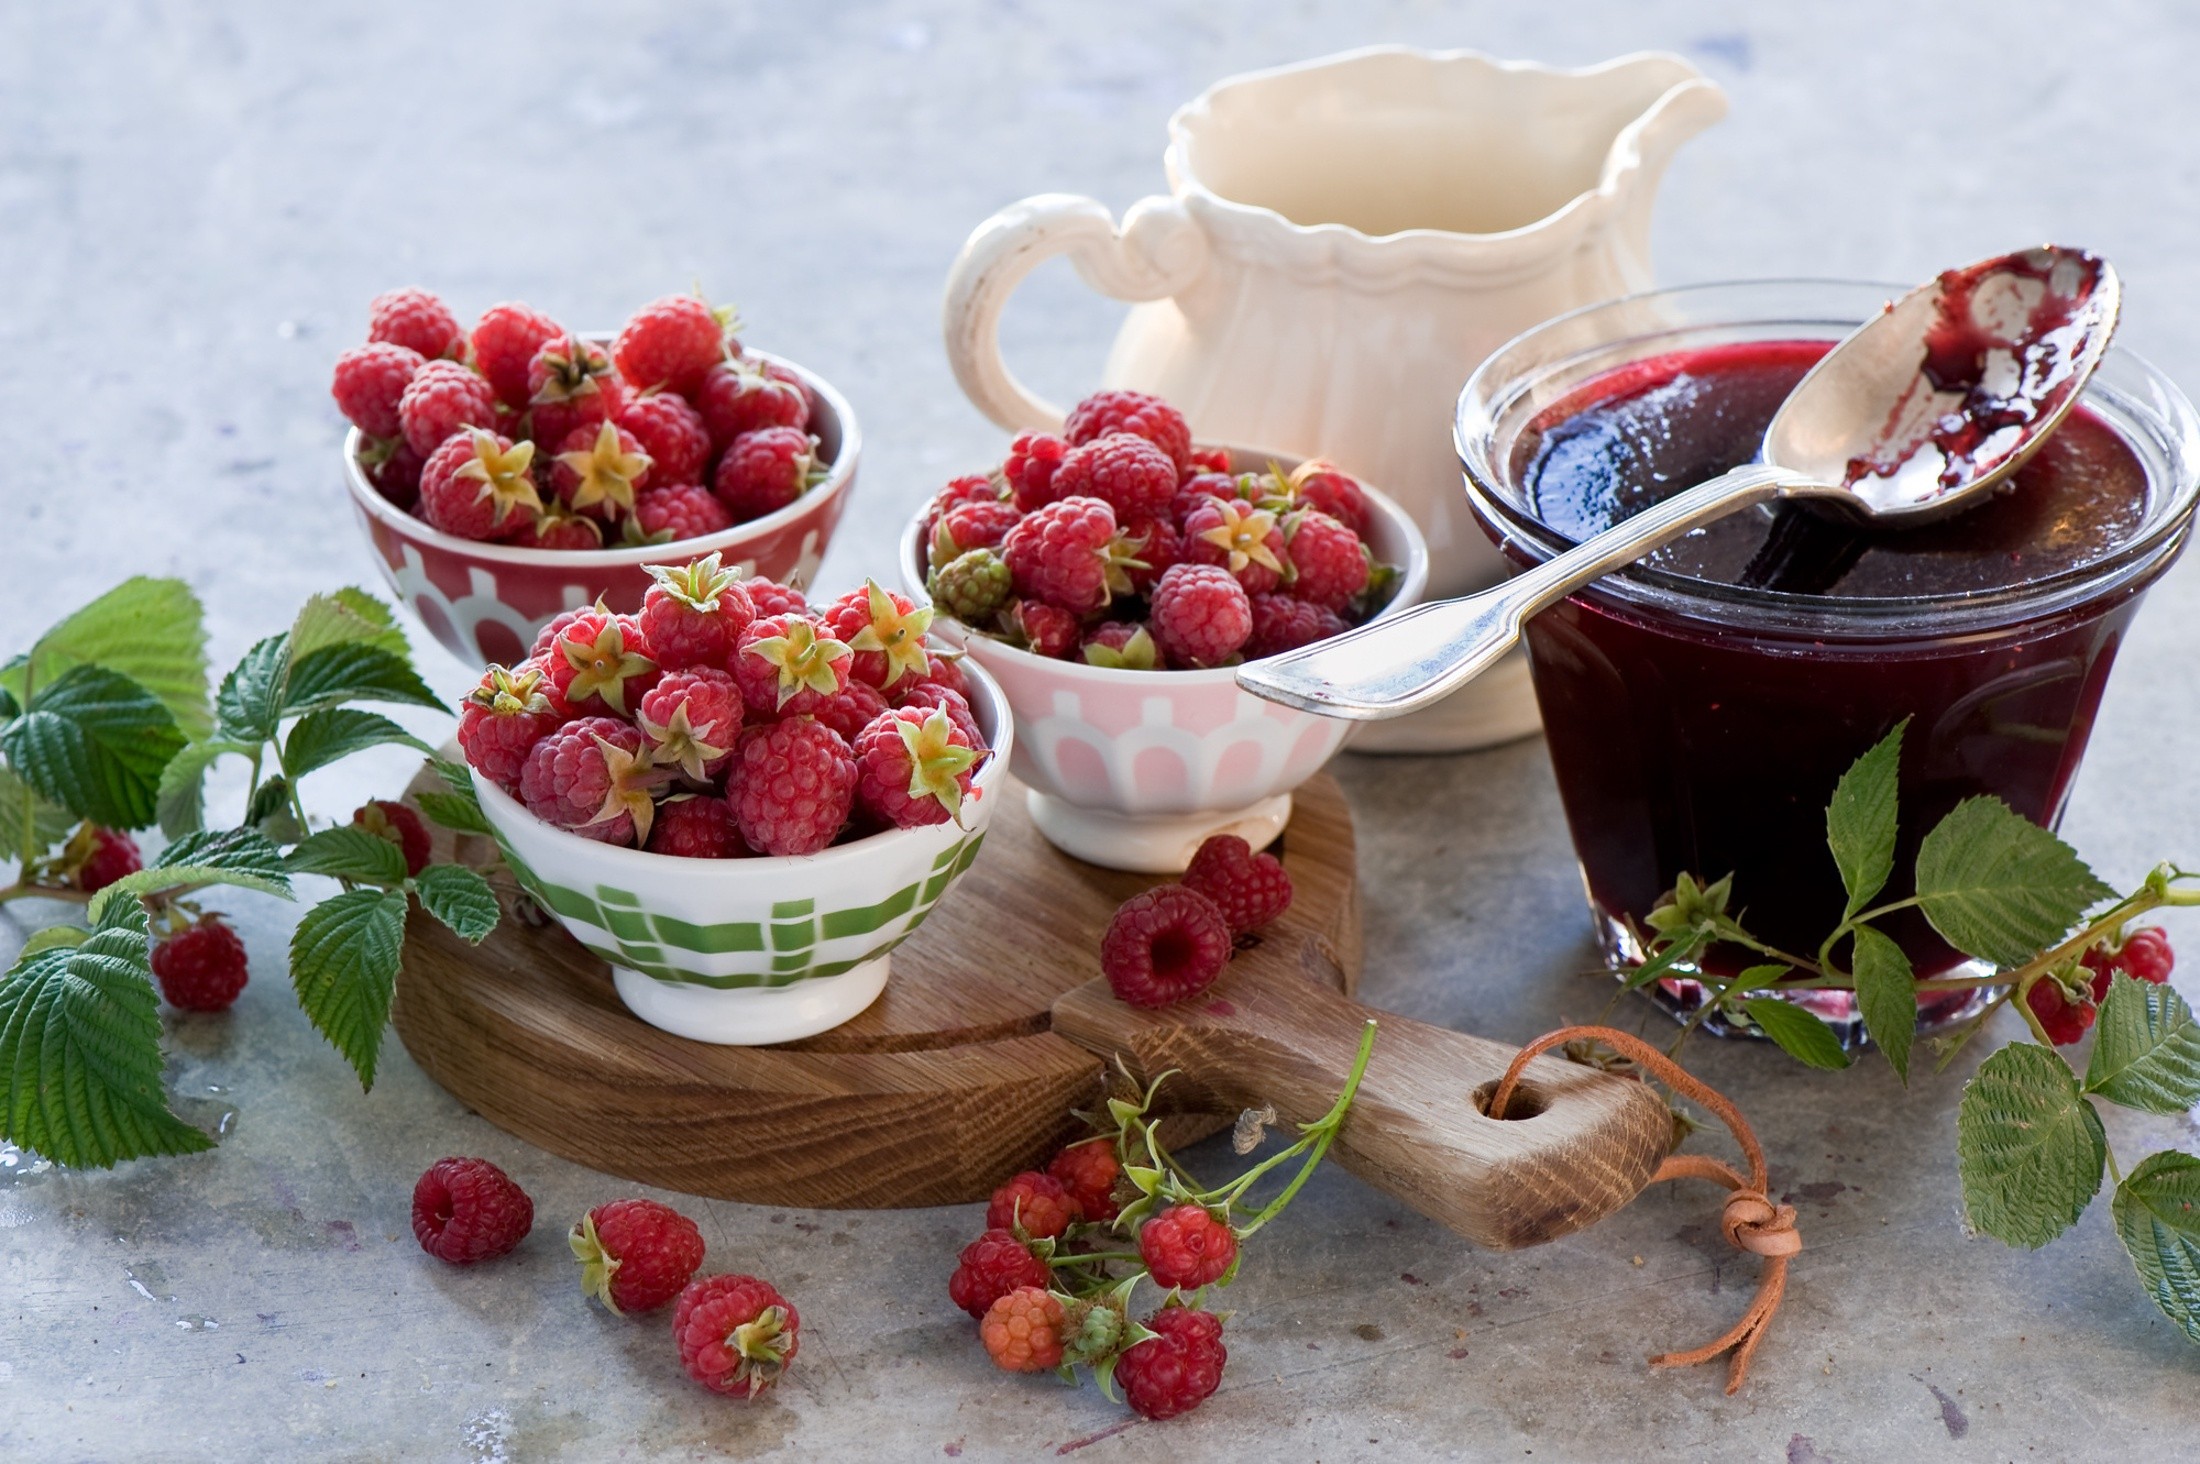 Raspberries Jam Dessert Fruit 2200x1464